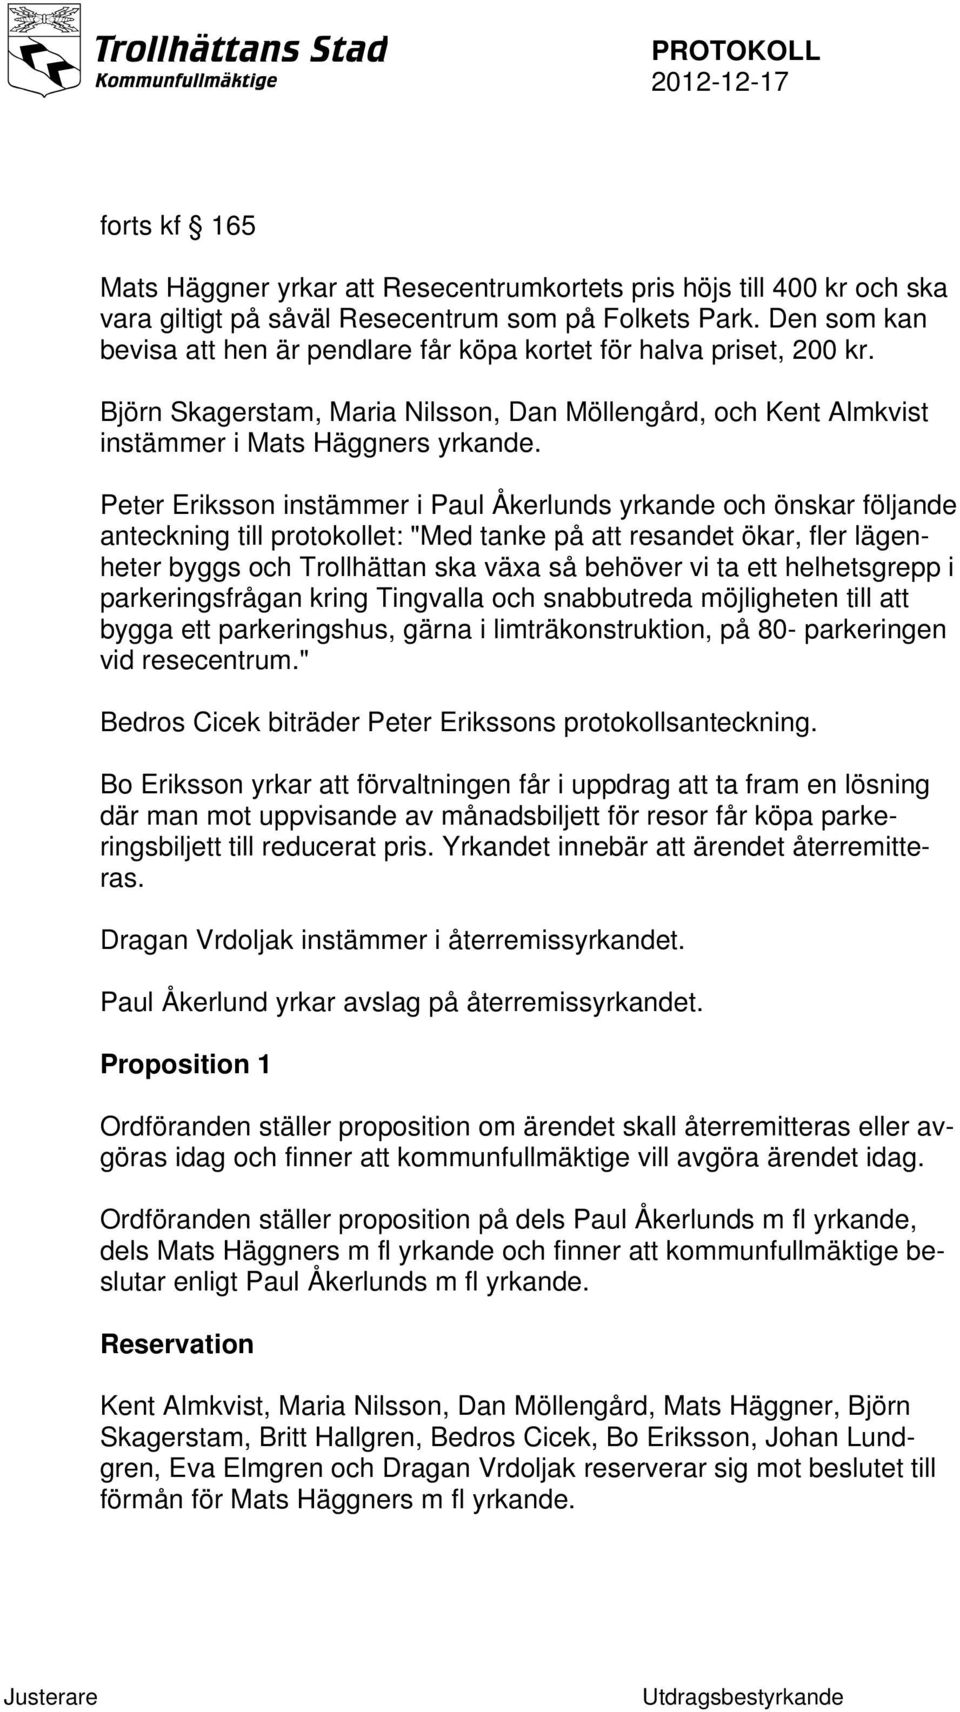 Peter Eriksson instämmer i Paul Åkerlunds yrkande och önskar följande anteckning till protokollet: "Med tanke på att resandet ökar, fler lägenheter byggs och Trollhättan ska växa så behöver vi ta ett